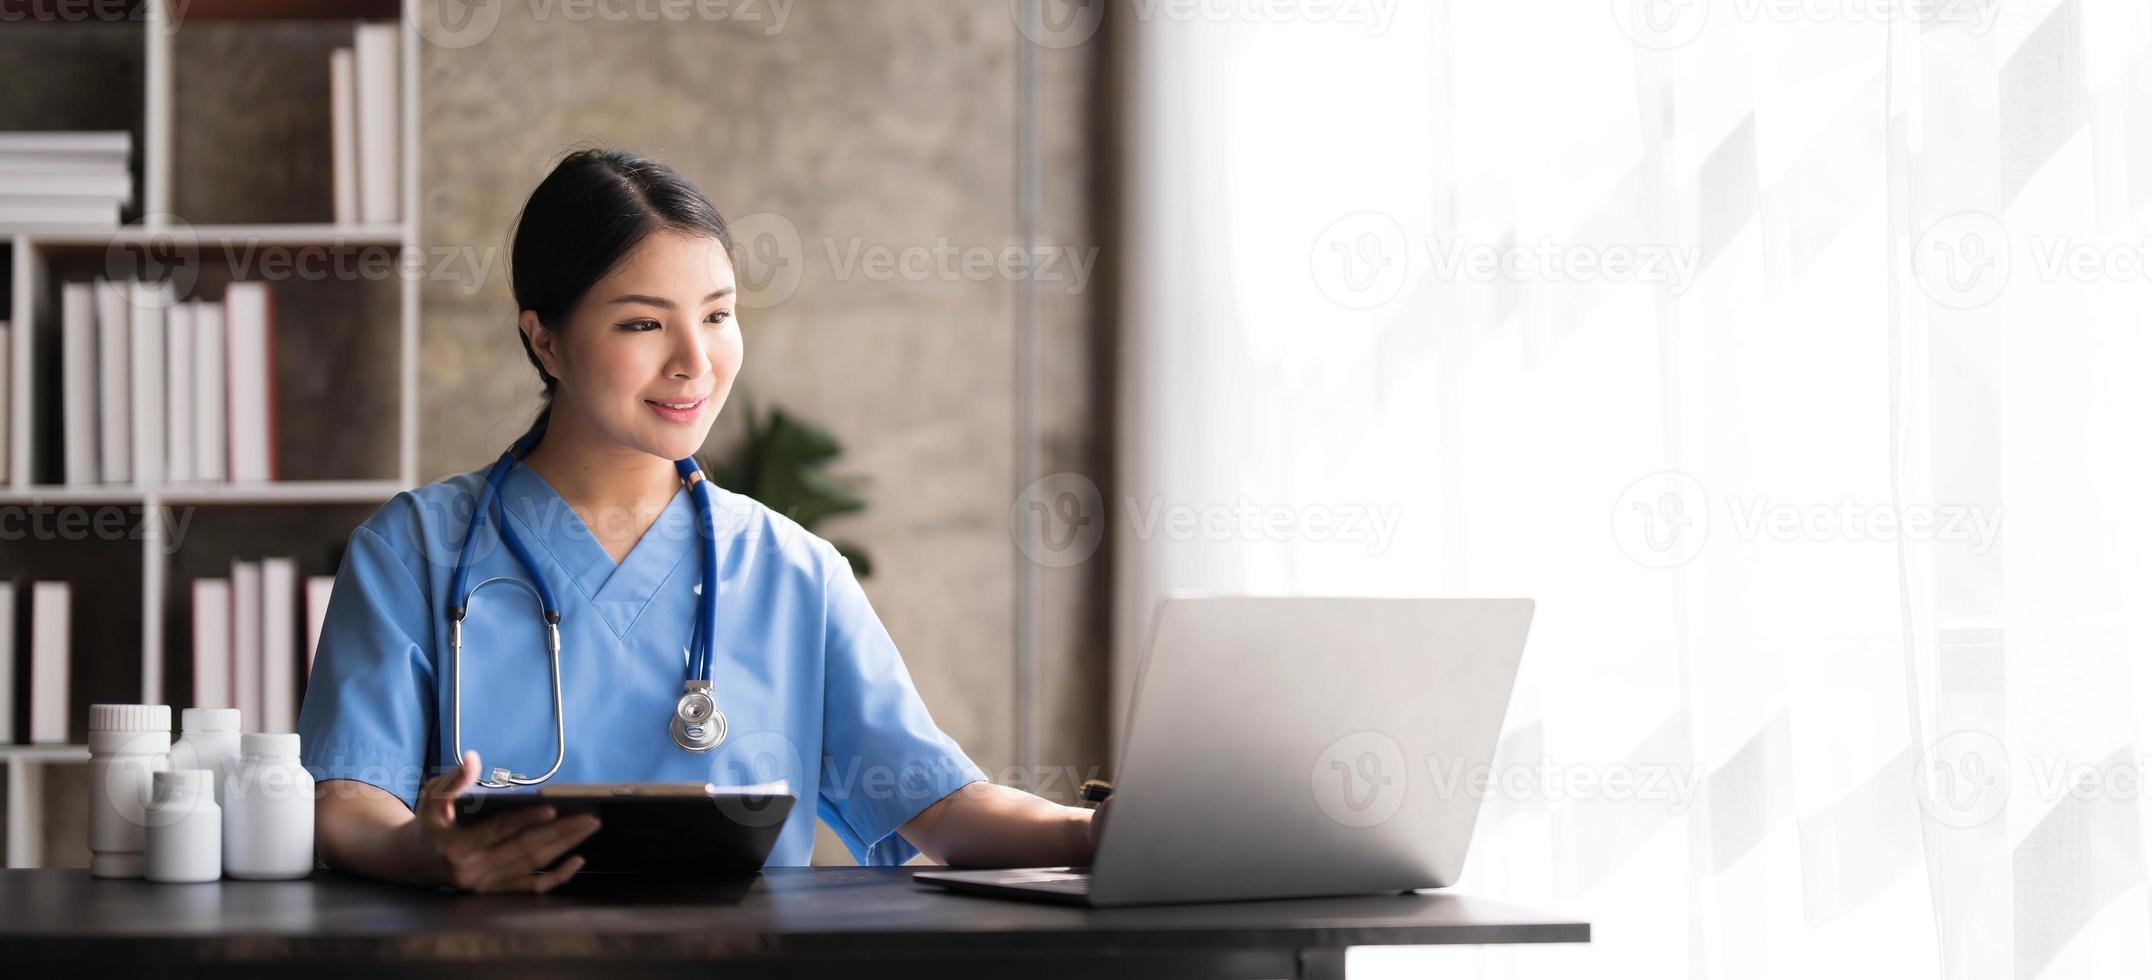 Aziatisch dokter jong mooi vrouw glimlachen gebruik makend van werken met een laptop computer en haar schrijven iets Aan papierwerk of klembord wit papier Bij ziekenhuis bureau kantoor, gezondheidszorg medisch concept foto